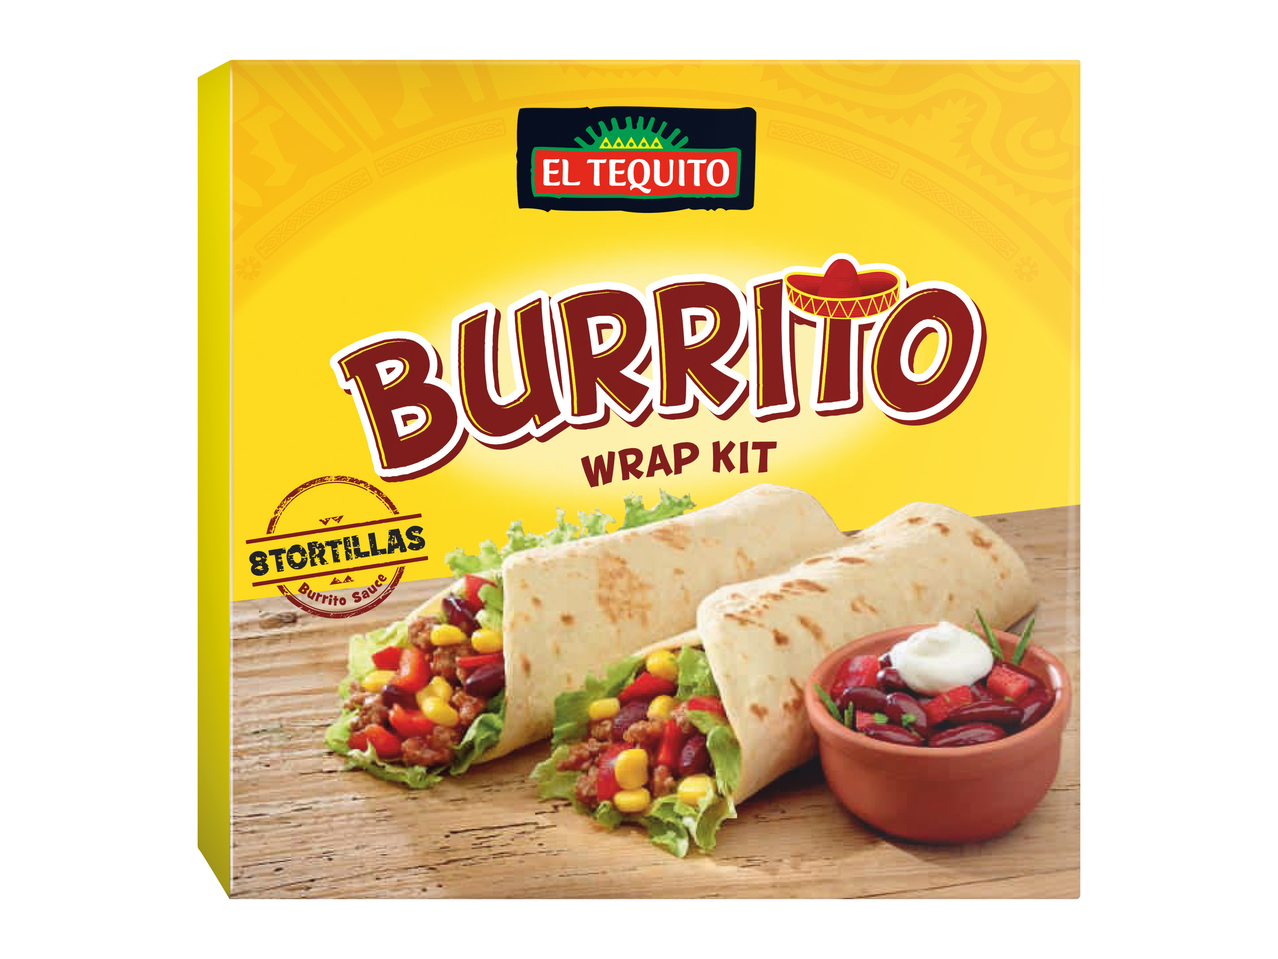 Burrito wrap kit